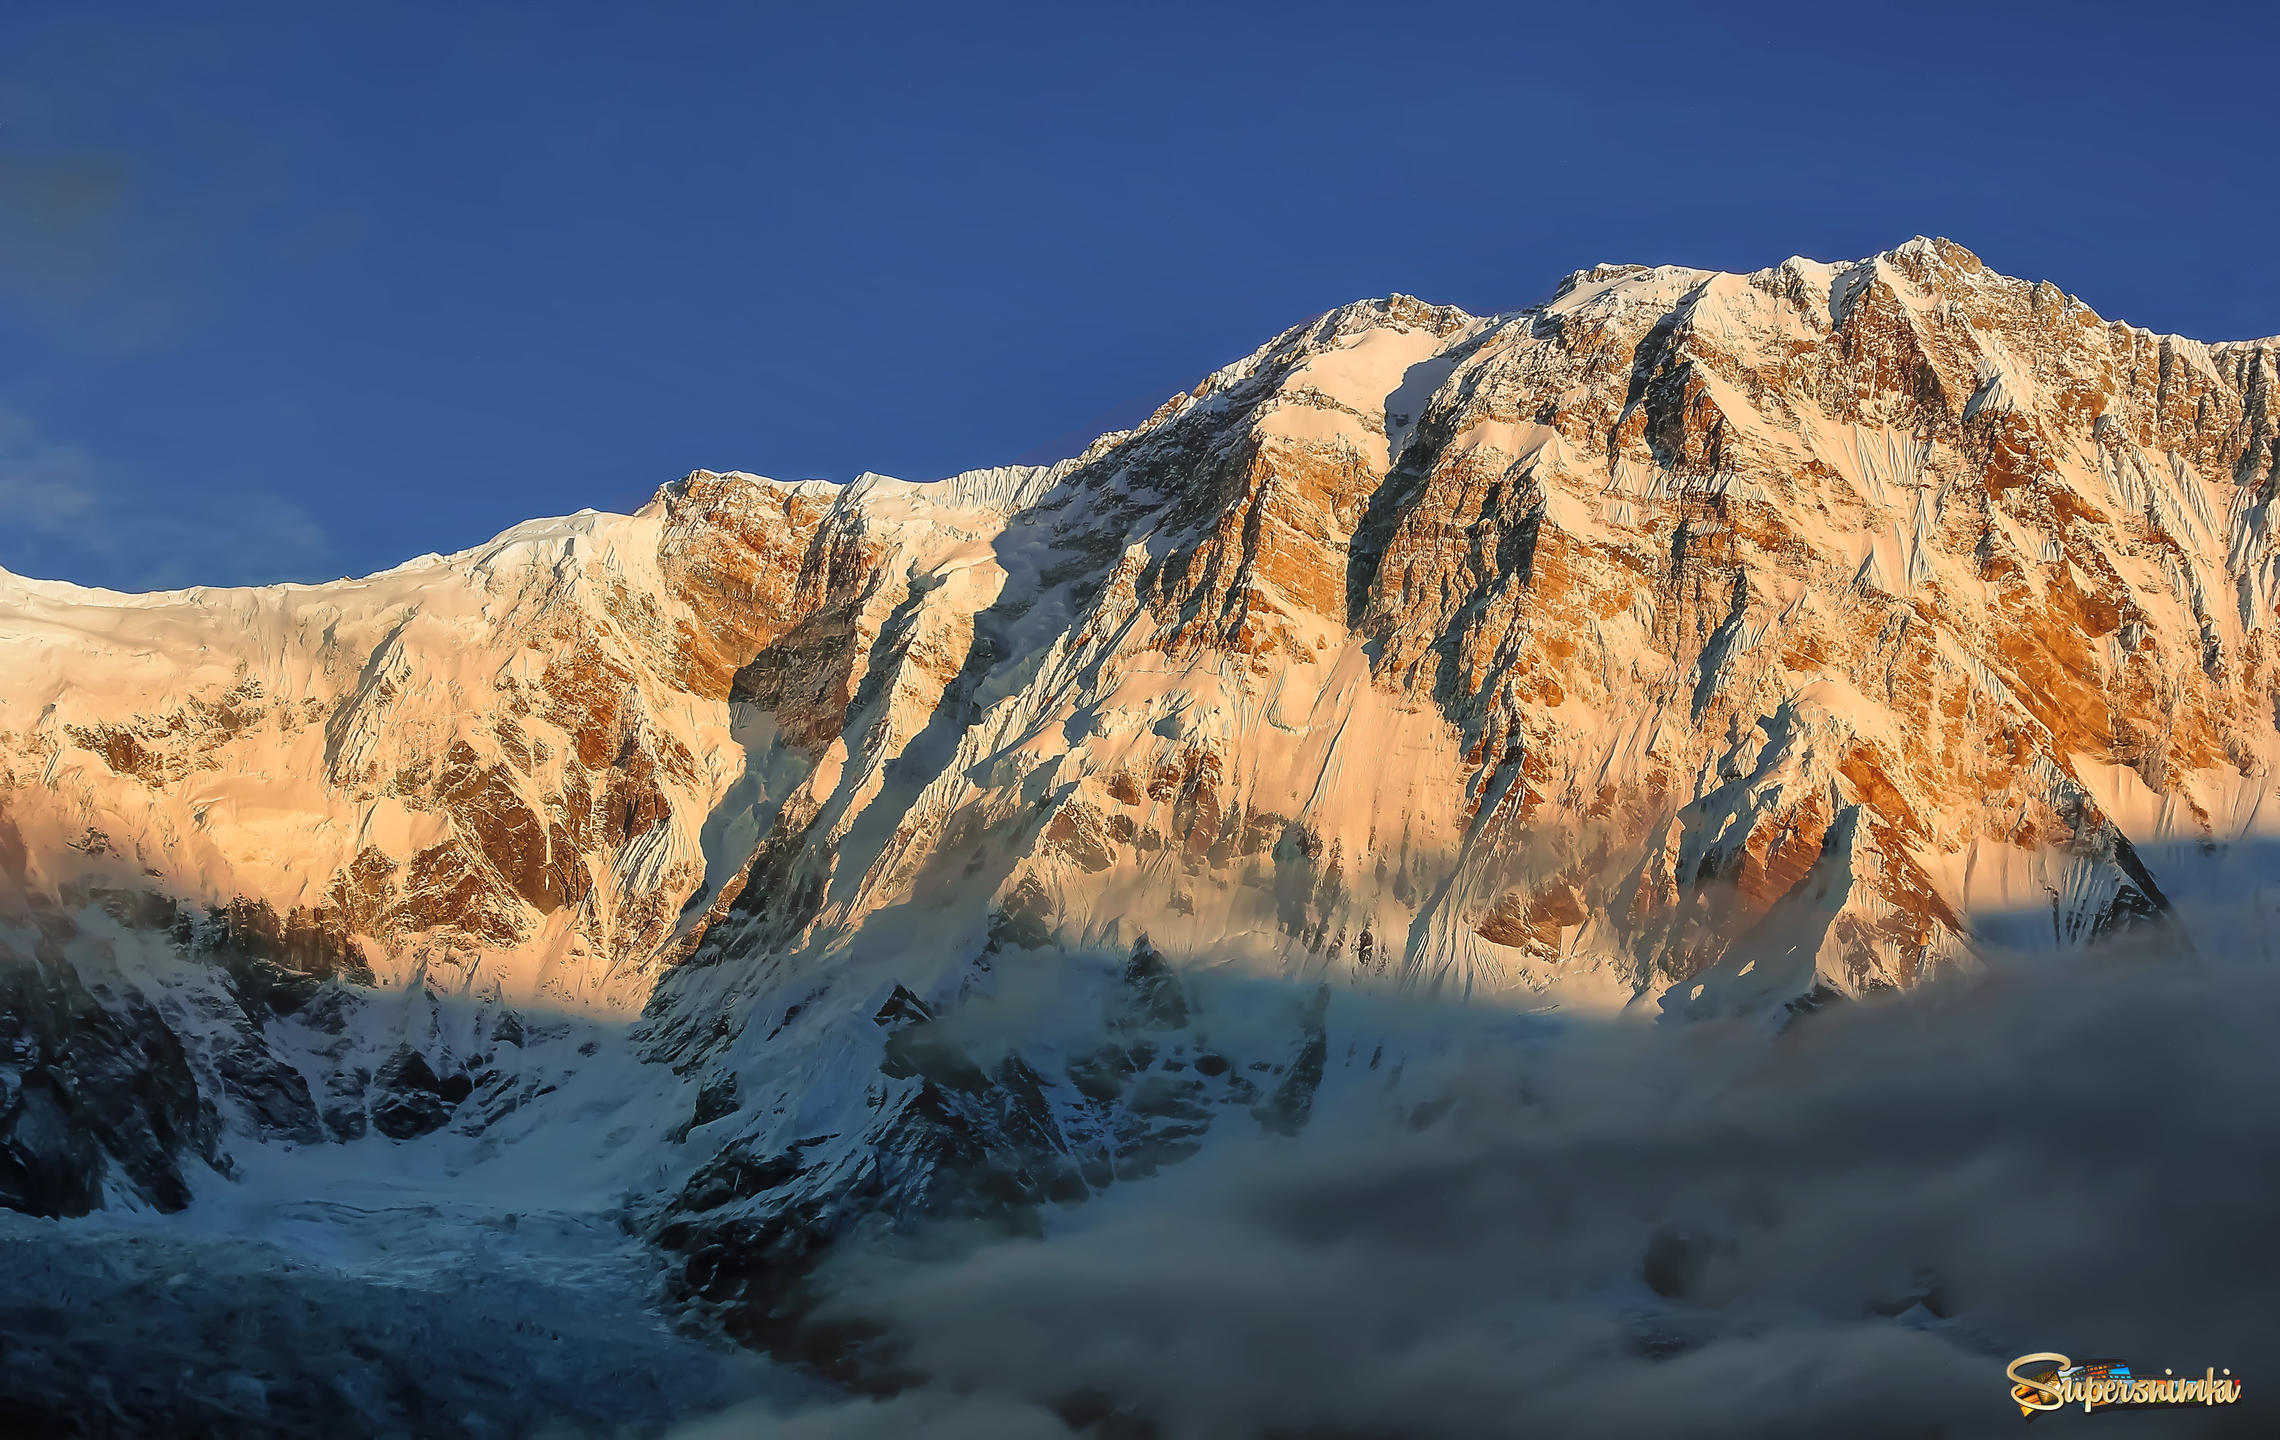 Рассвет в Гималаях( высочайшая горная система Земли)...5200м.Непал.